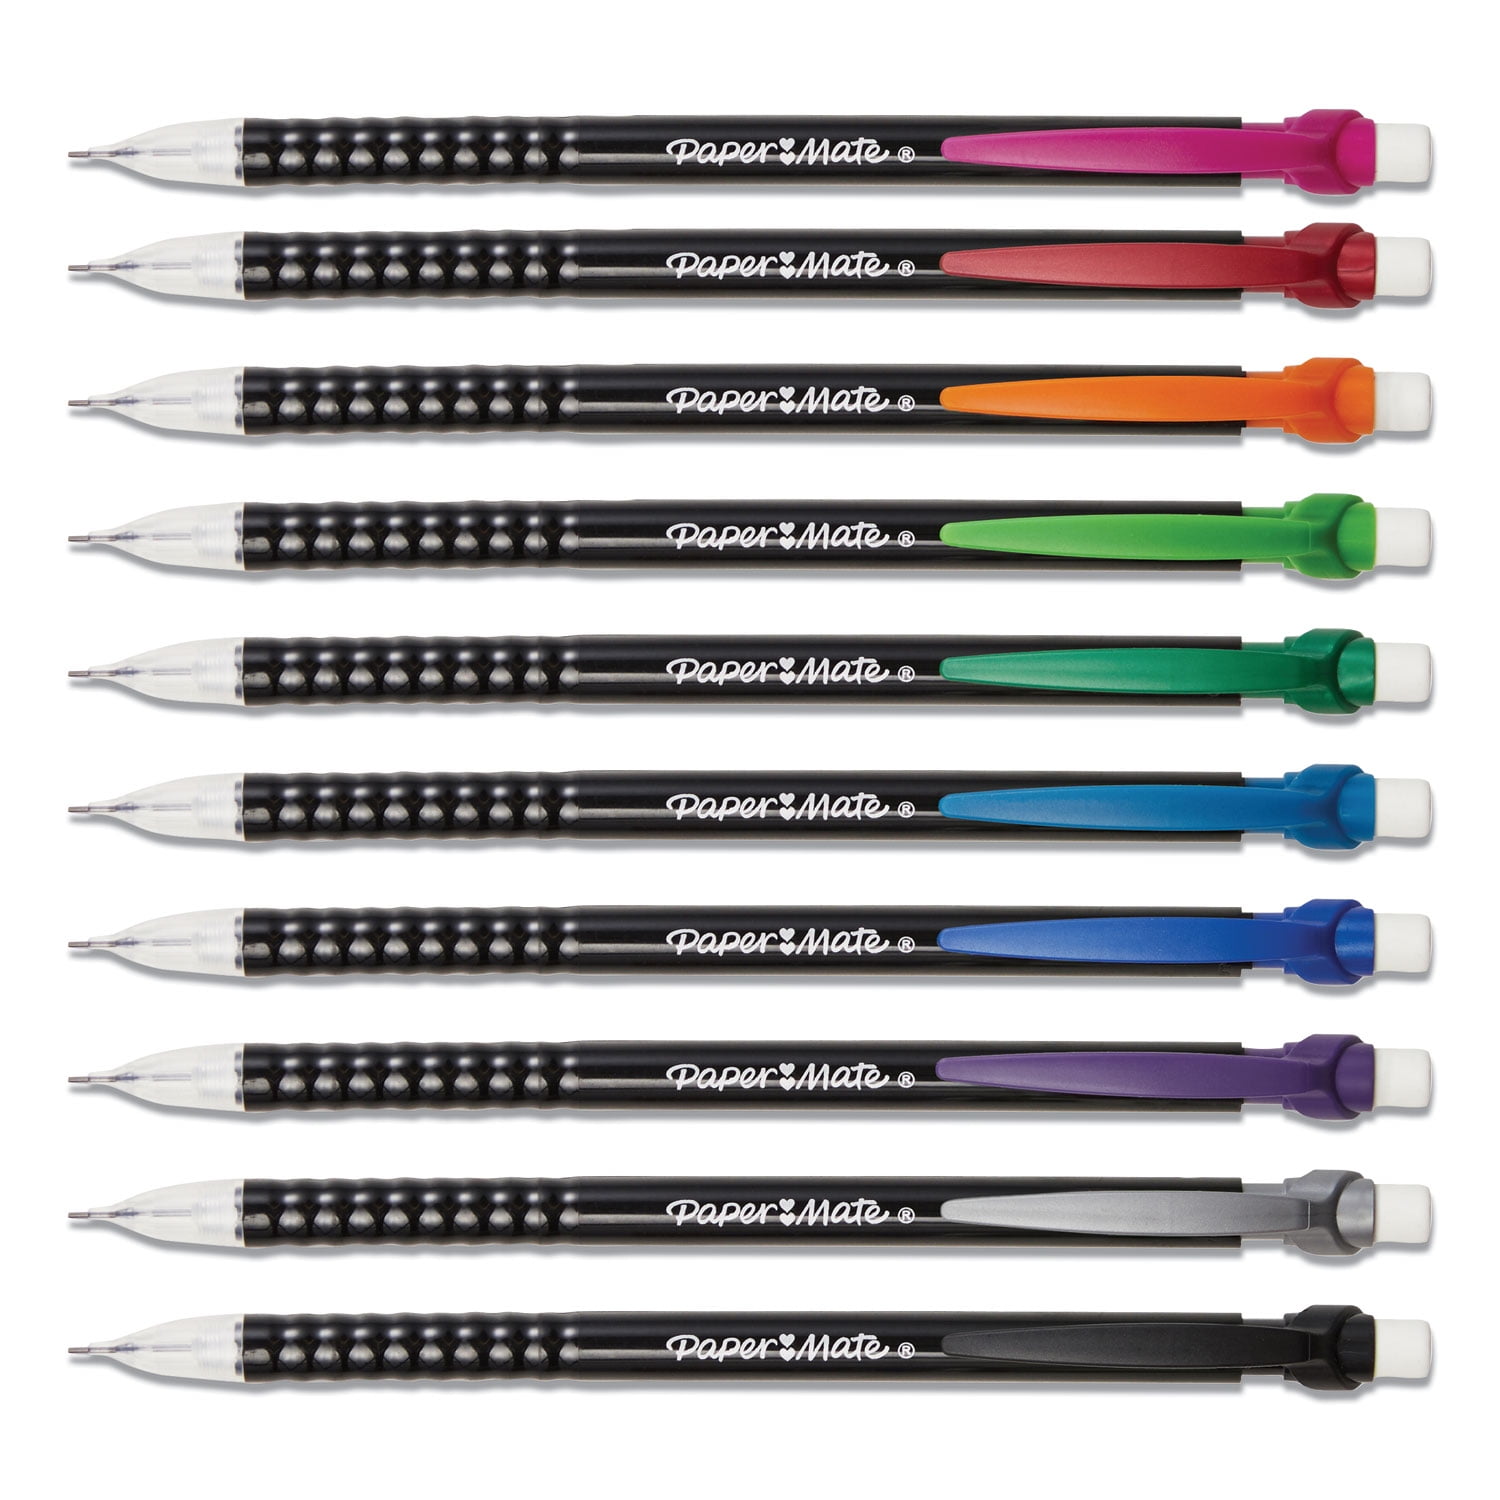  Tomorotec Mechanical Pencils Set 6PCS Pack School